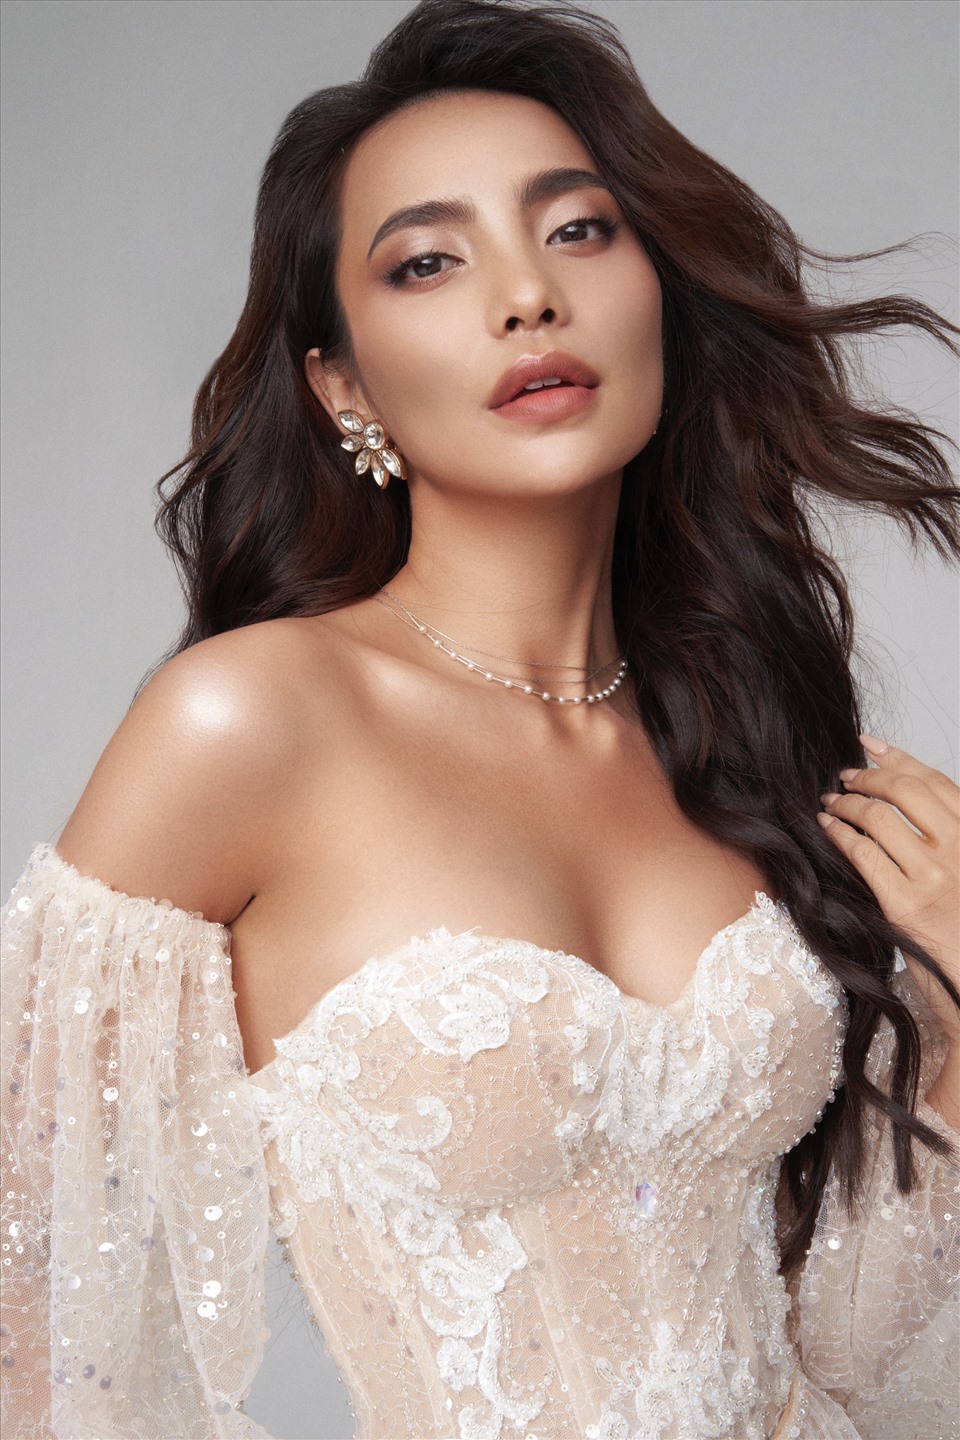 Người đẹp được đánh giá là thí sinh tiềm năng của cuộc thi “Hoa hậu Hoàn vũ Việt Nam 2021“. Ảnh: NVCC